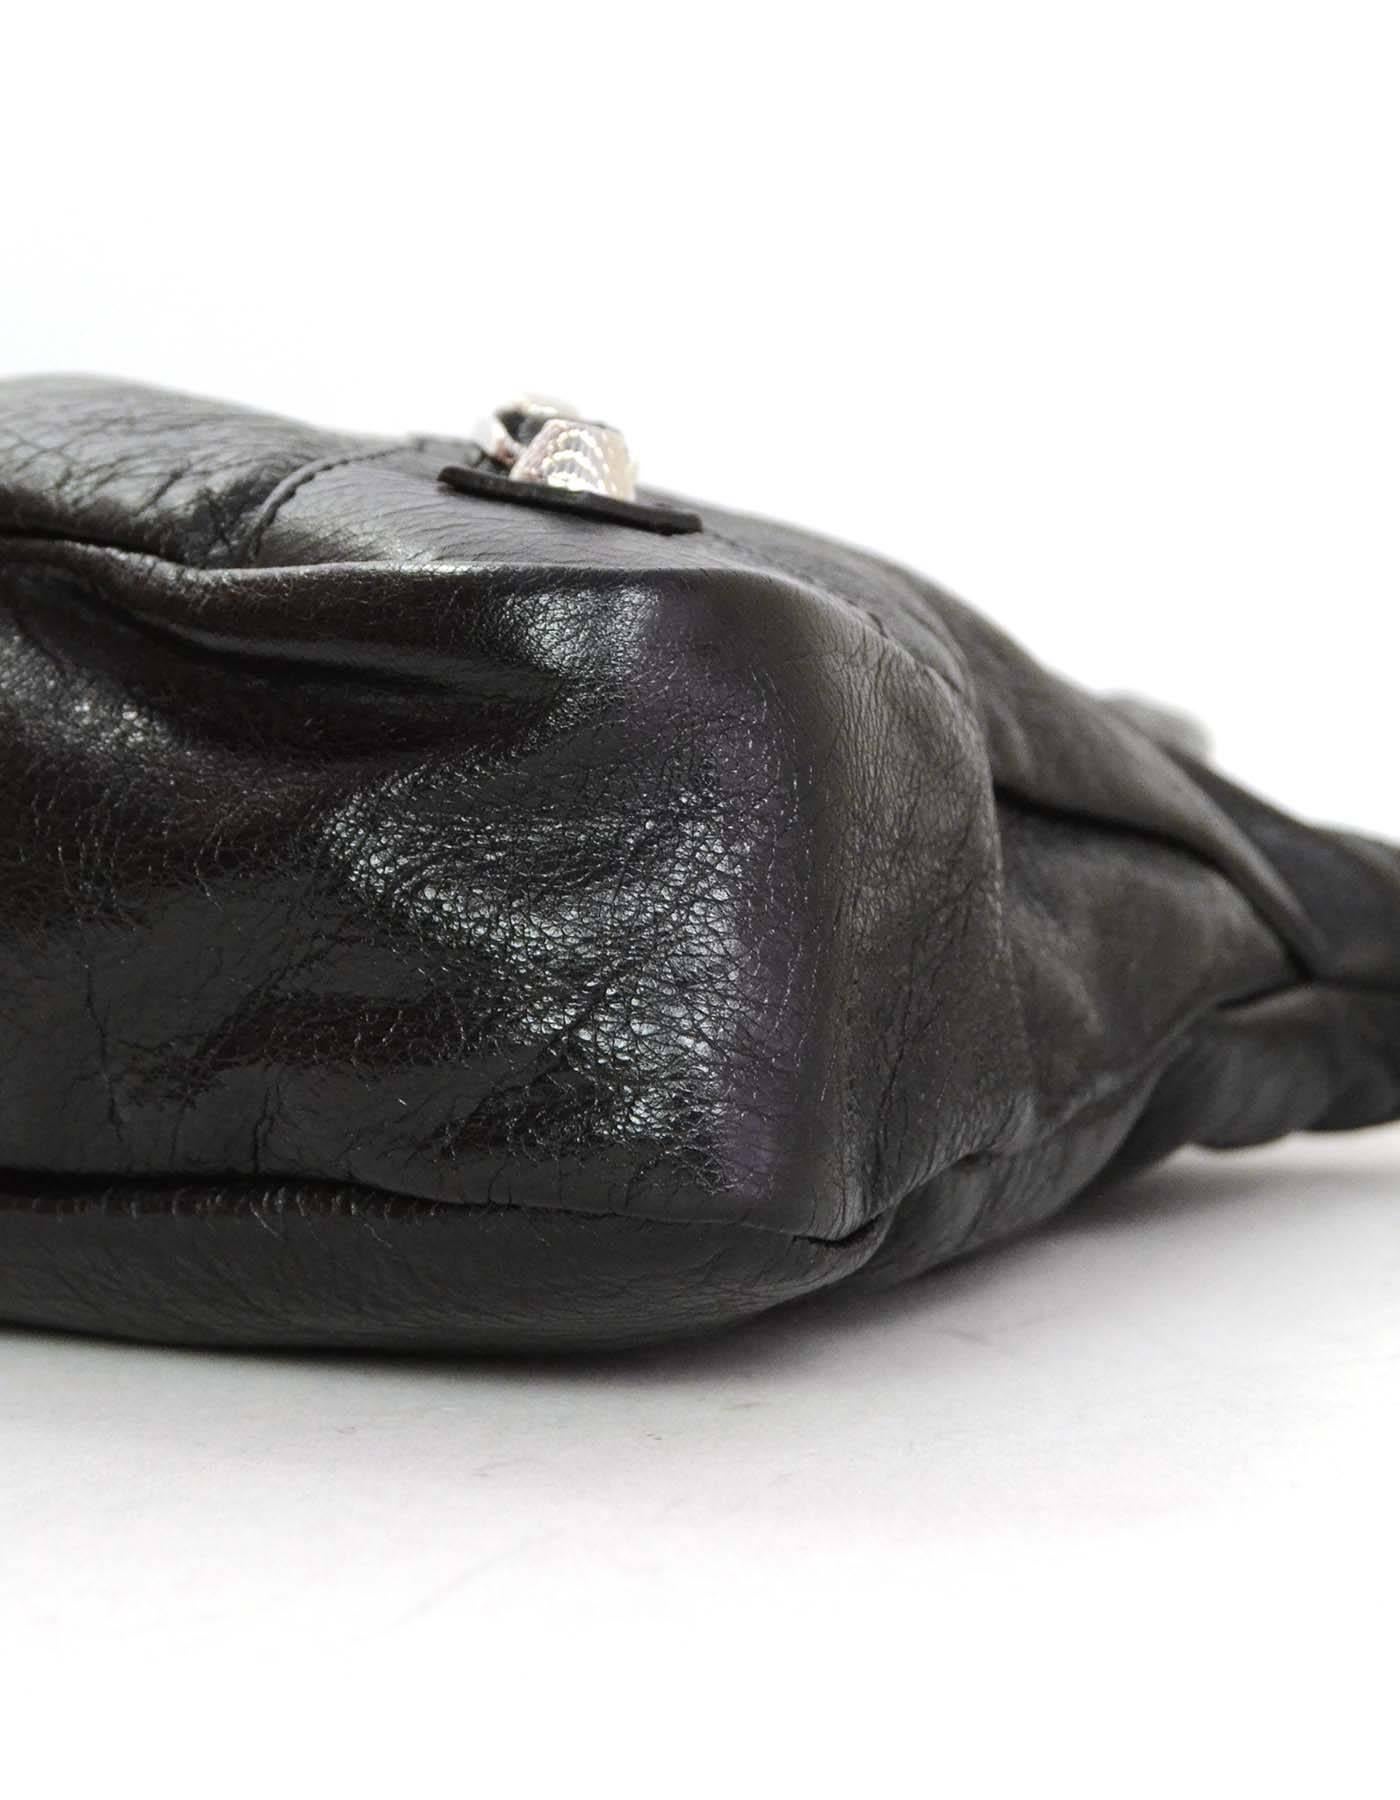 Balenciaga LIKE NEW Black Leather Town Crossbody Bag SHW 1